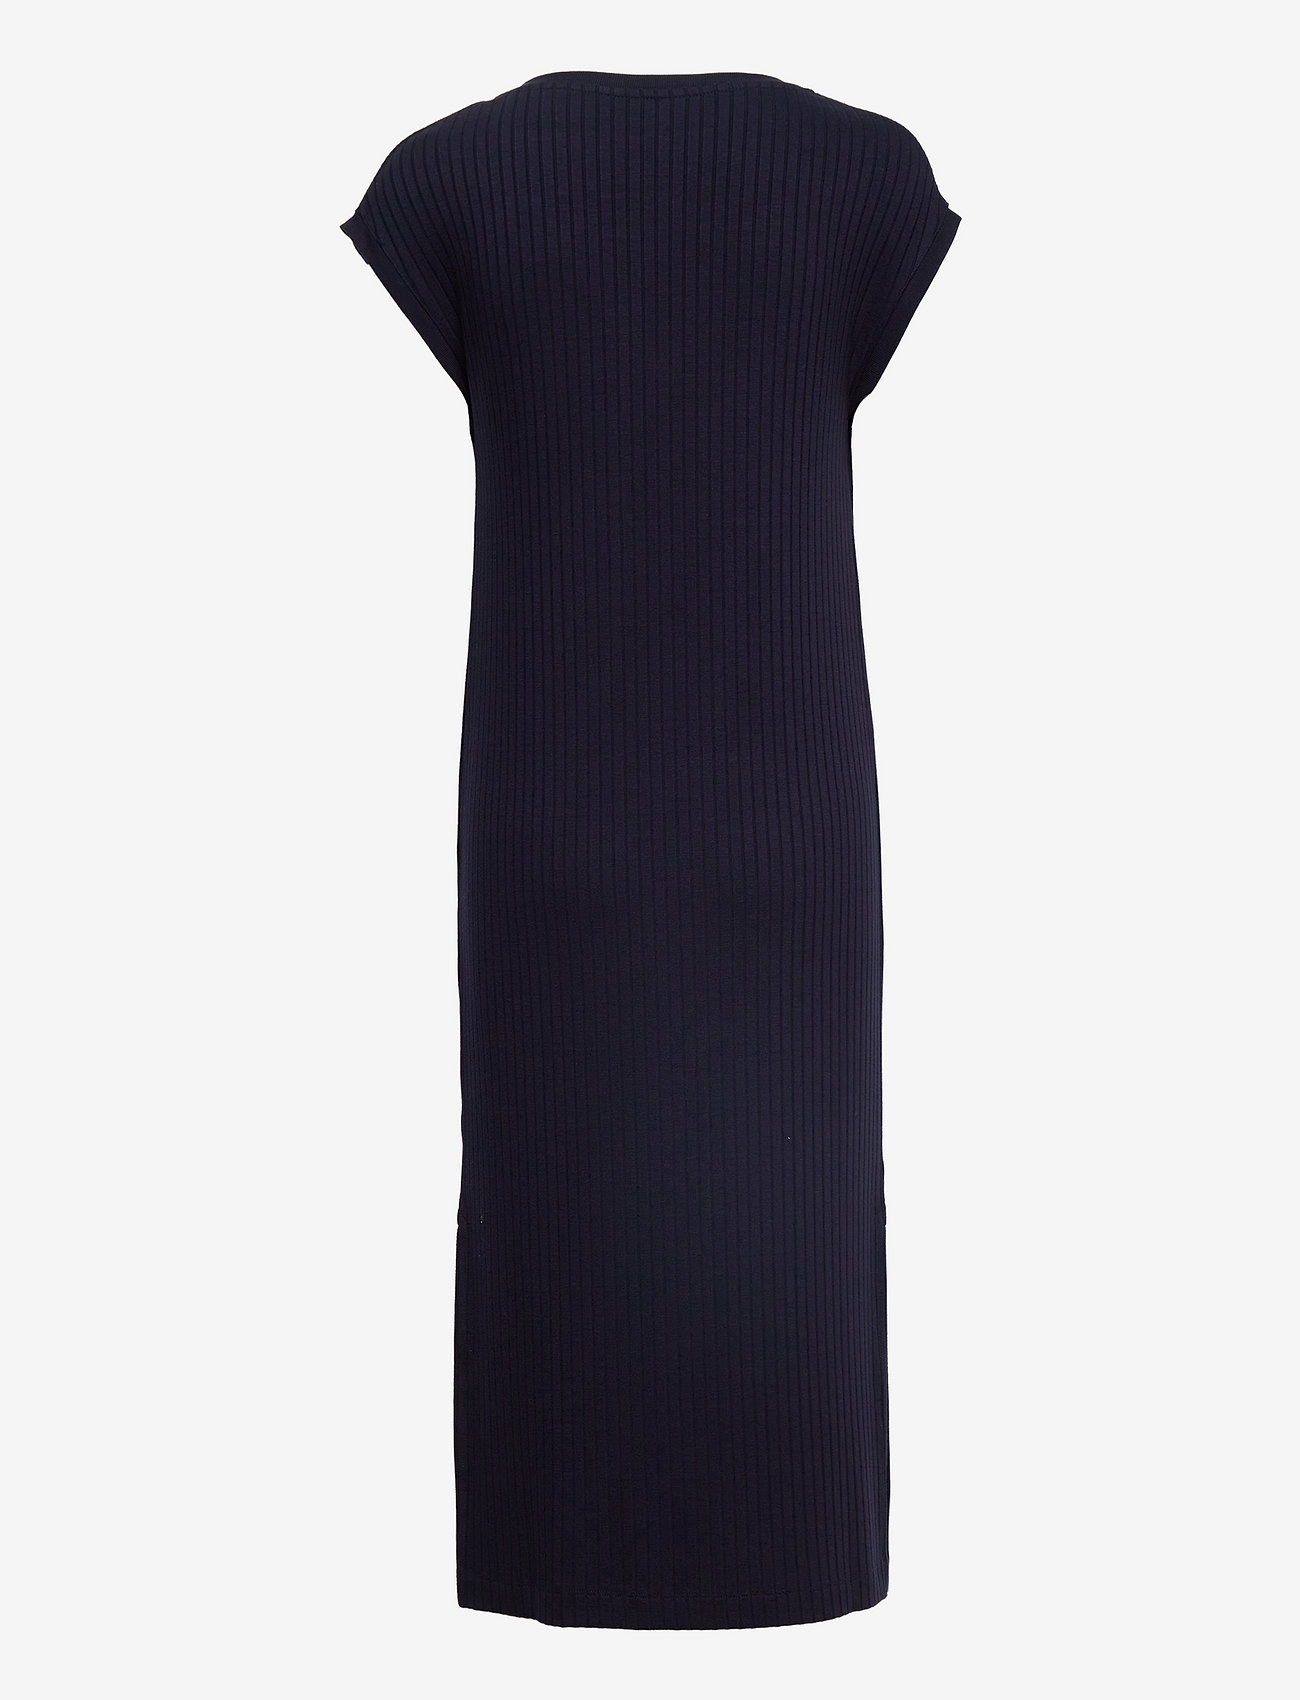 GANT - D1. DETAIL SLIT JERSEY DRESS - summer dresses - evening blue - 1